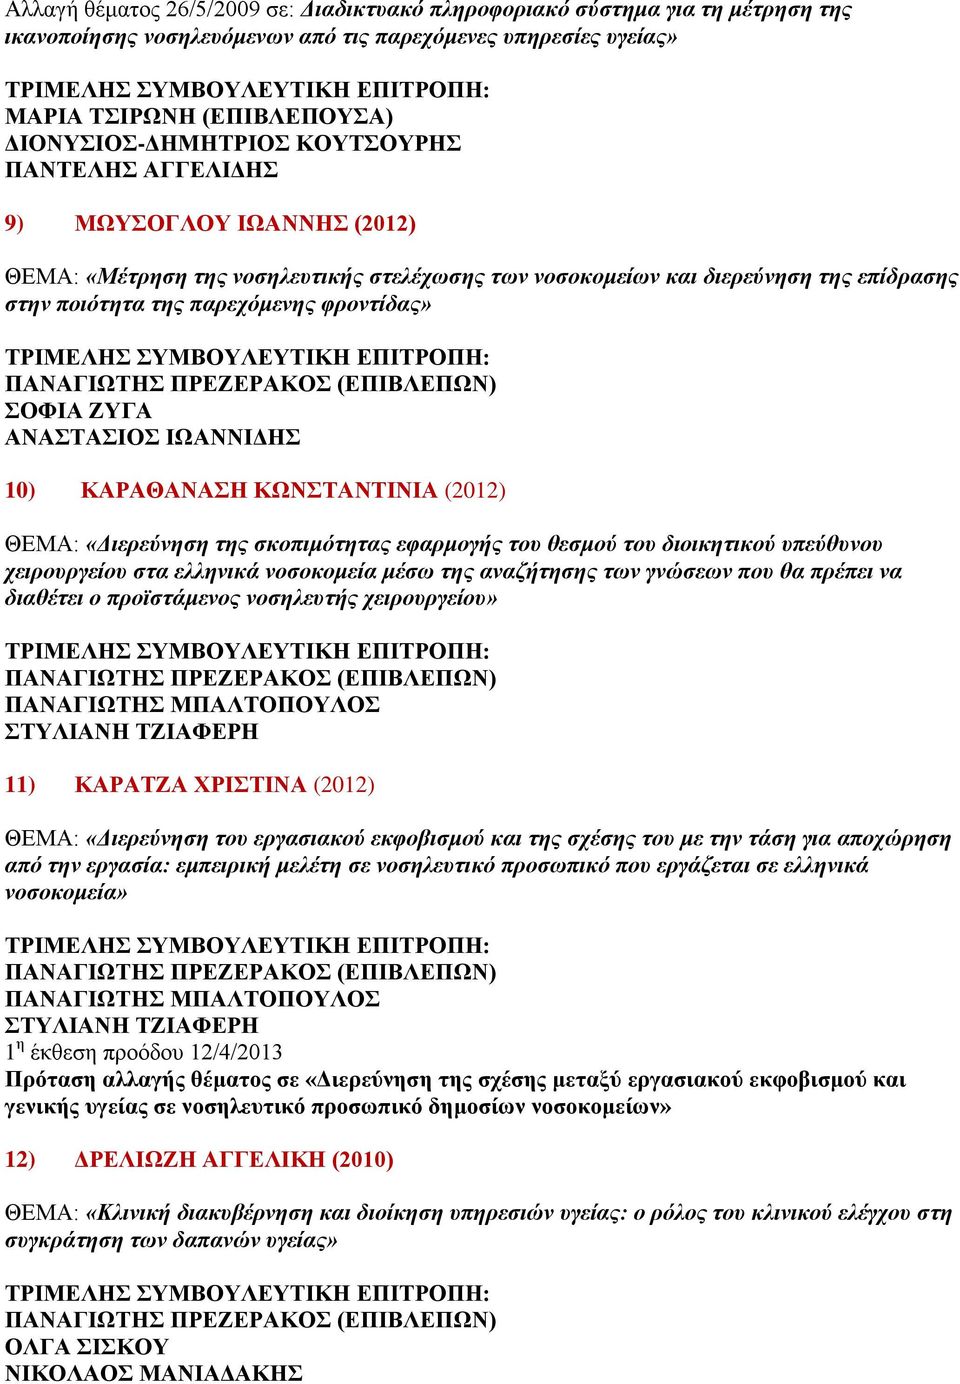 ΚΑΡΑΘΑΝΑΣΗ ΚΩΝΣΤΑΝΤΙΝΙΑ (2012) ΘΕΜΑ: «Διερεύνηση της σκοπιμότητας εφαρμογής του θεσμού του διοικητικού υπεύθυνου χειρουργείου στα ελληνικά νοσοκομεία μέσω της αναζήτησης των γνώσεων που θα πρέπει να